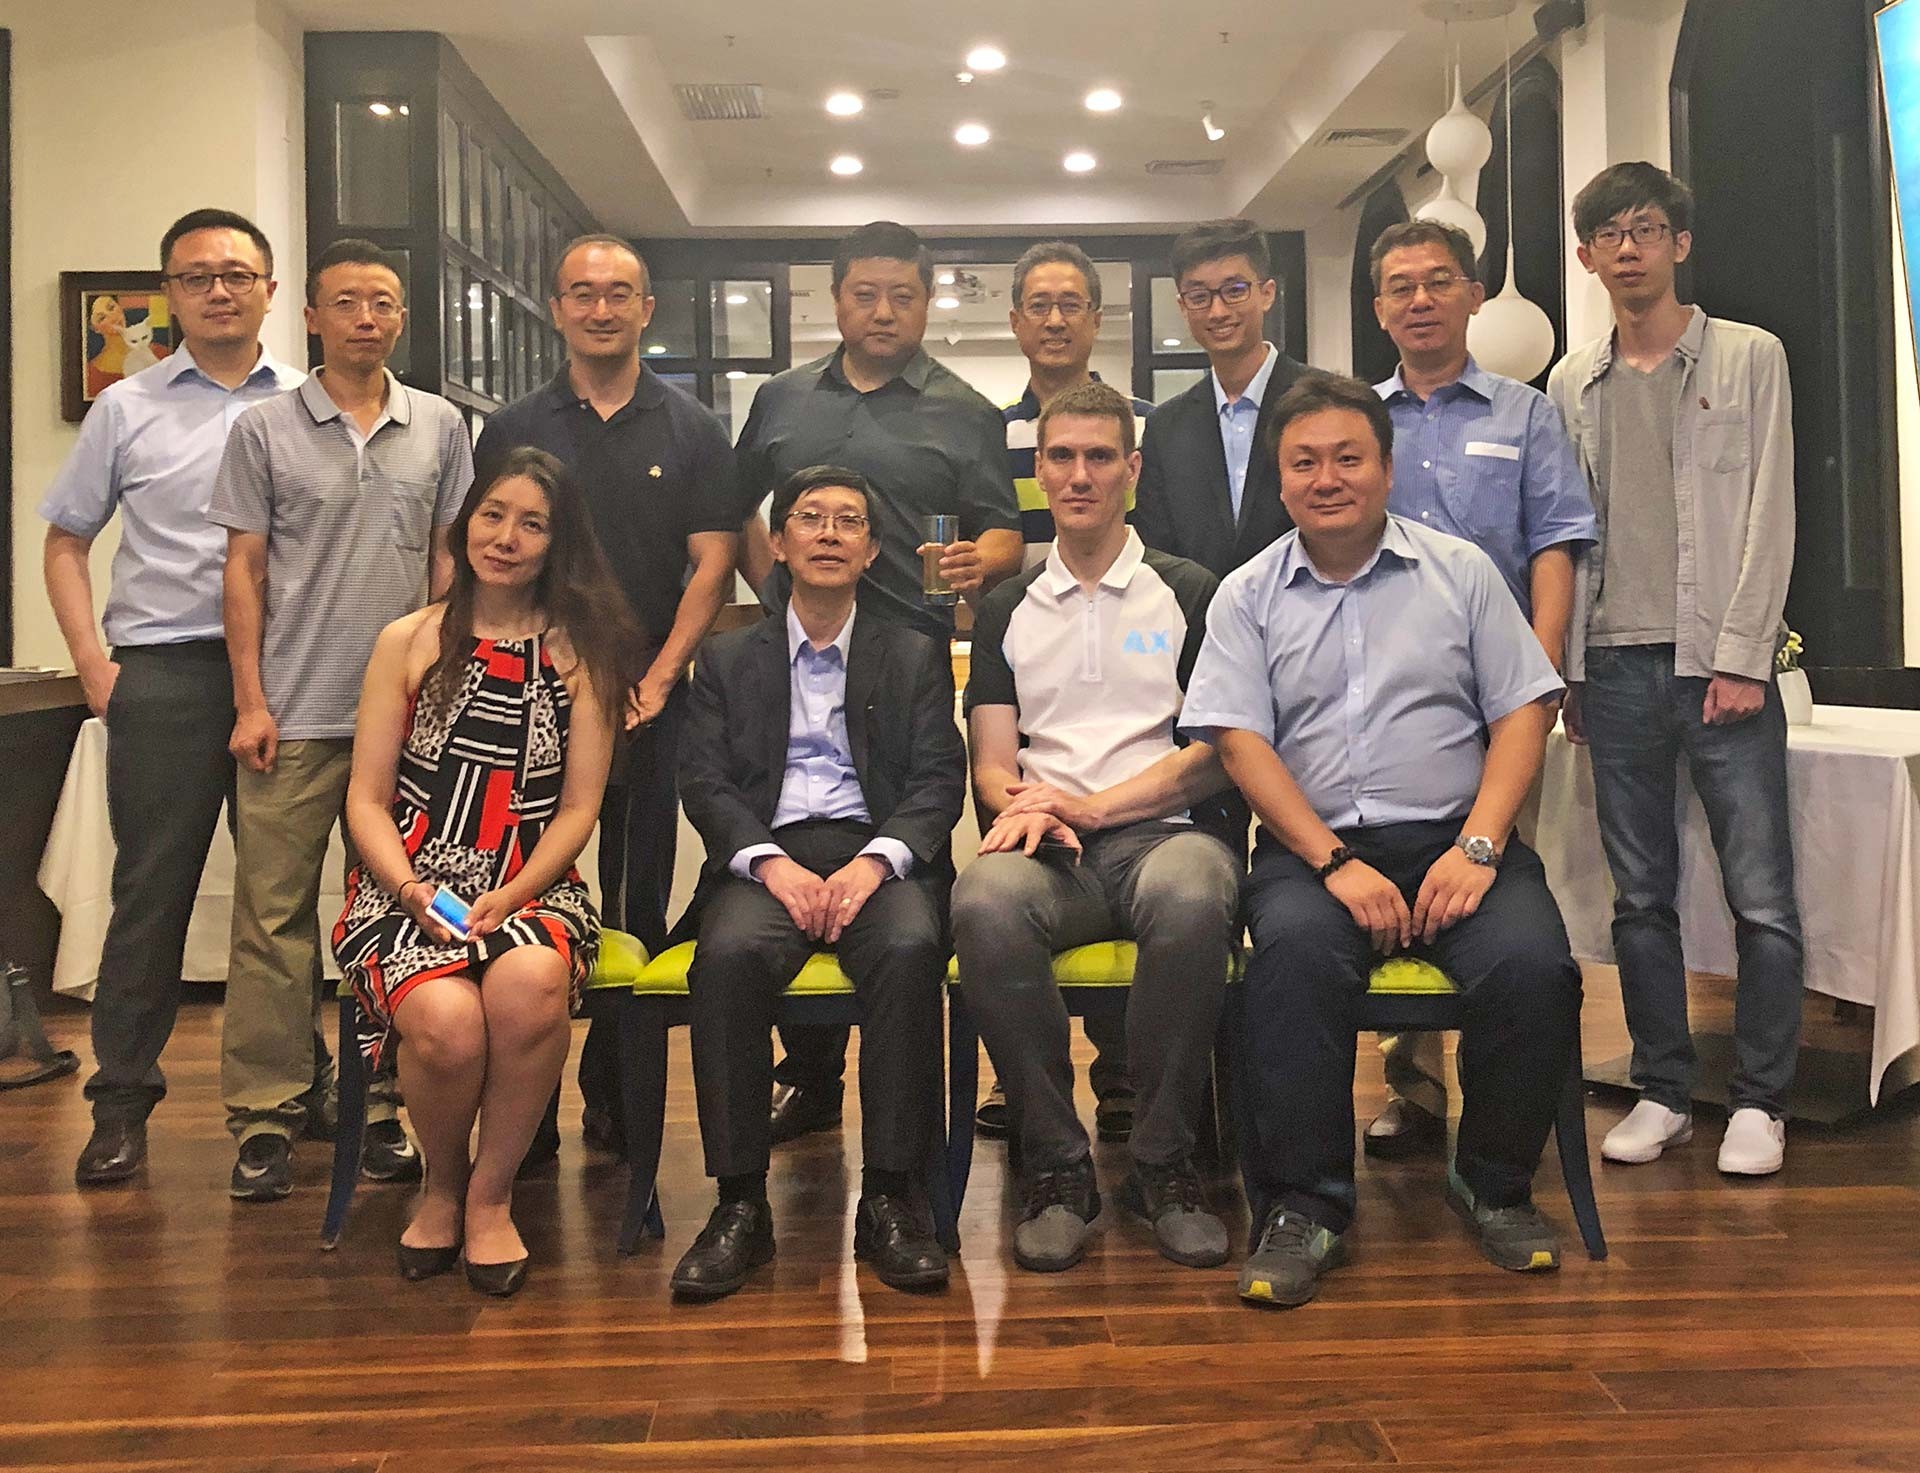 Beijing alumni reception - June 2018